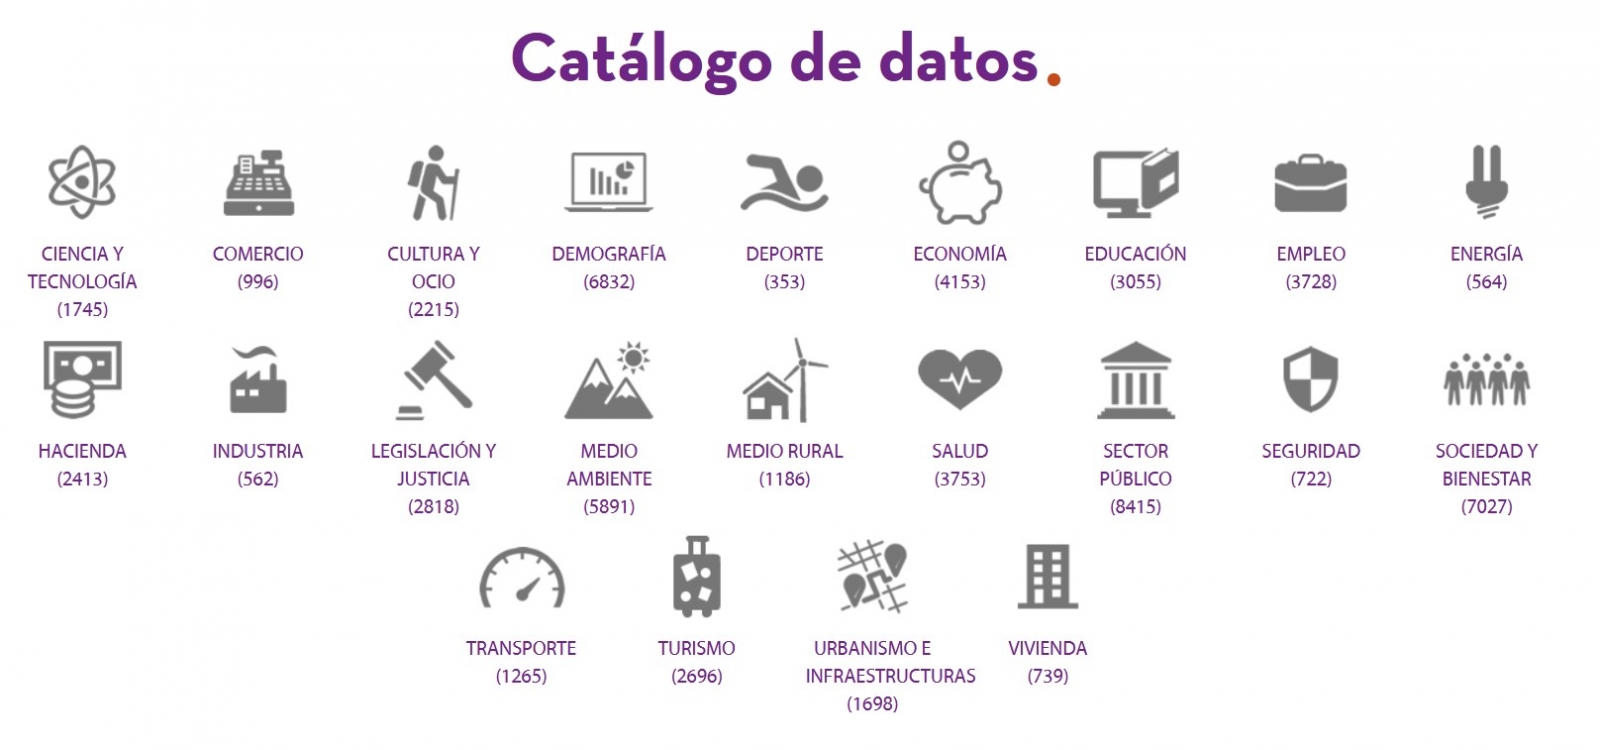 Iconos de las categorías disponibles en el catálogo de datos y el número de datasets que hay de cada categoría (https://datos.gob.es/es/catalogo)